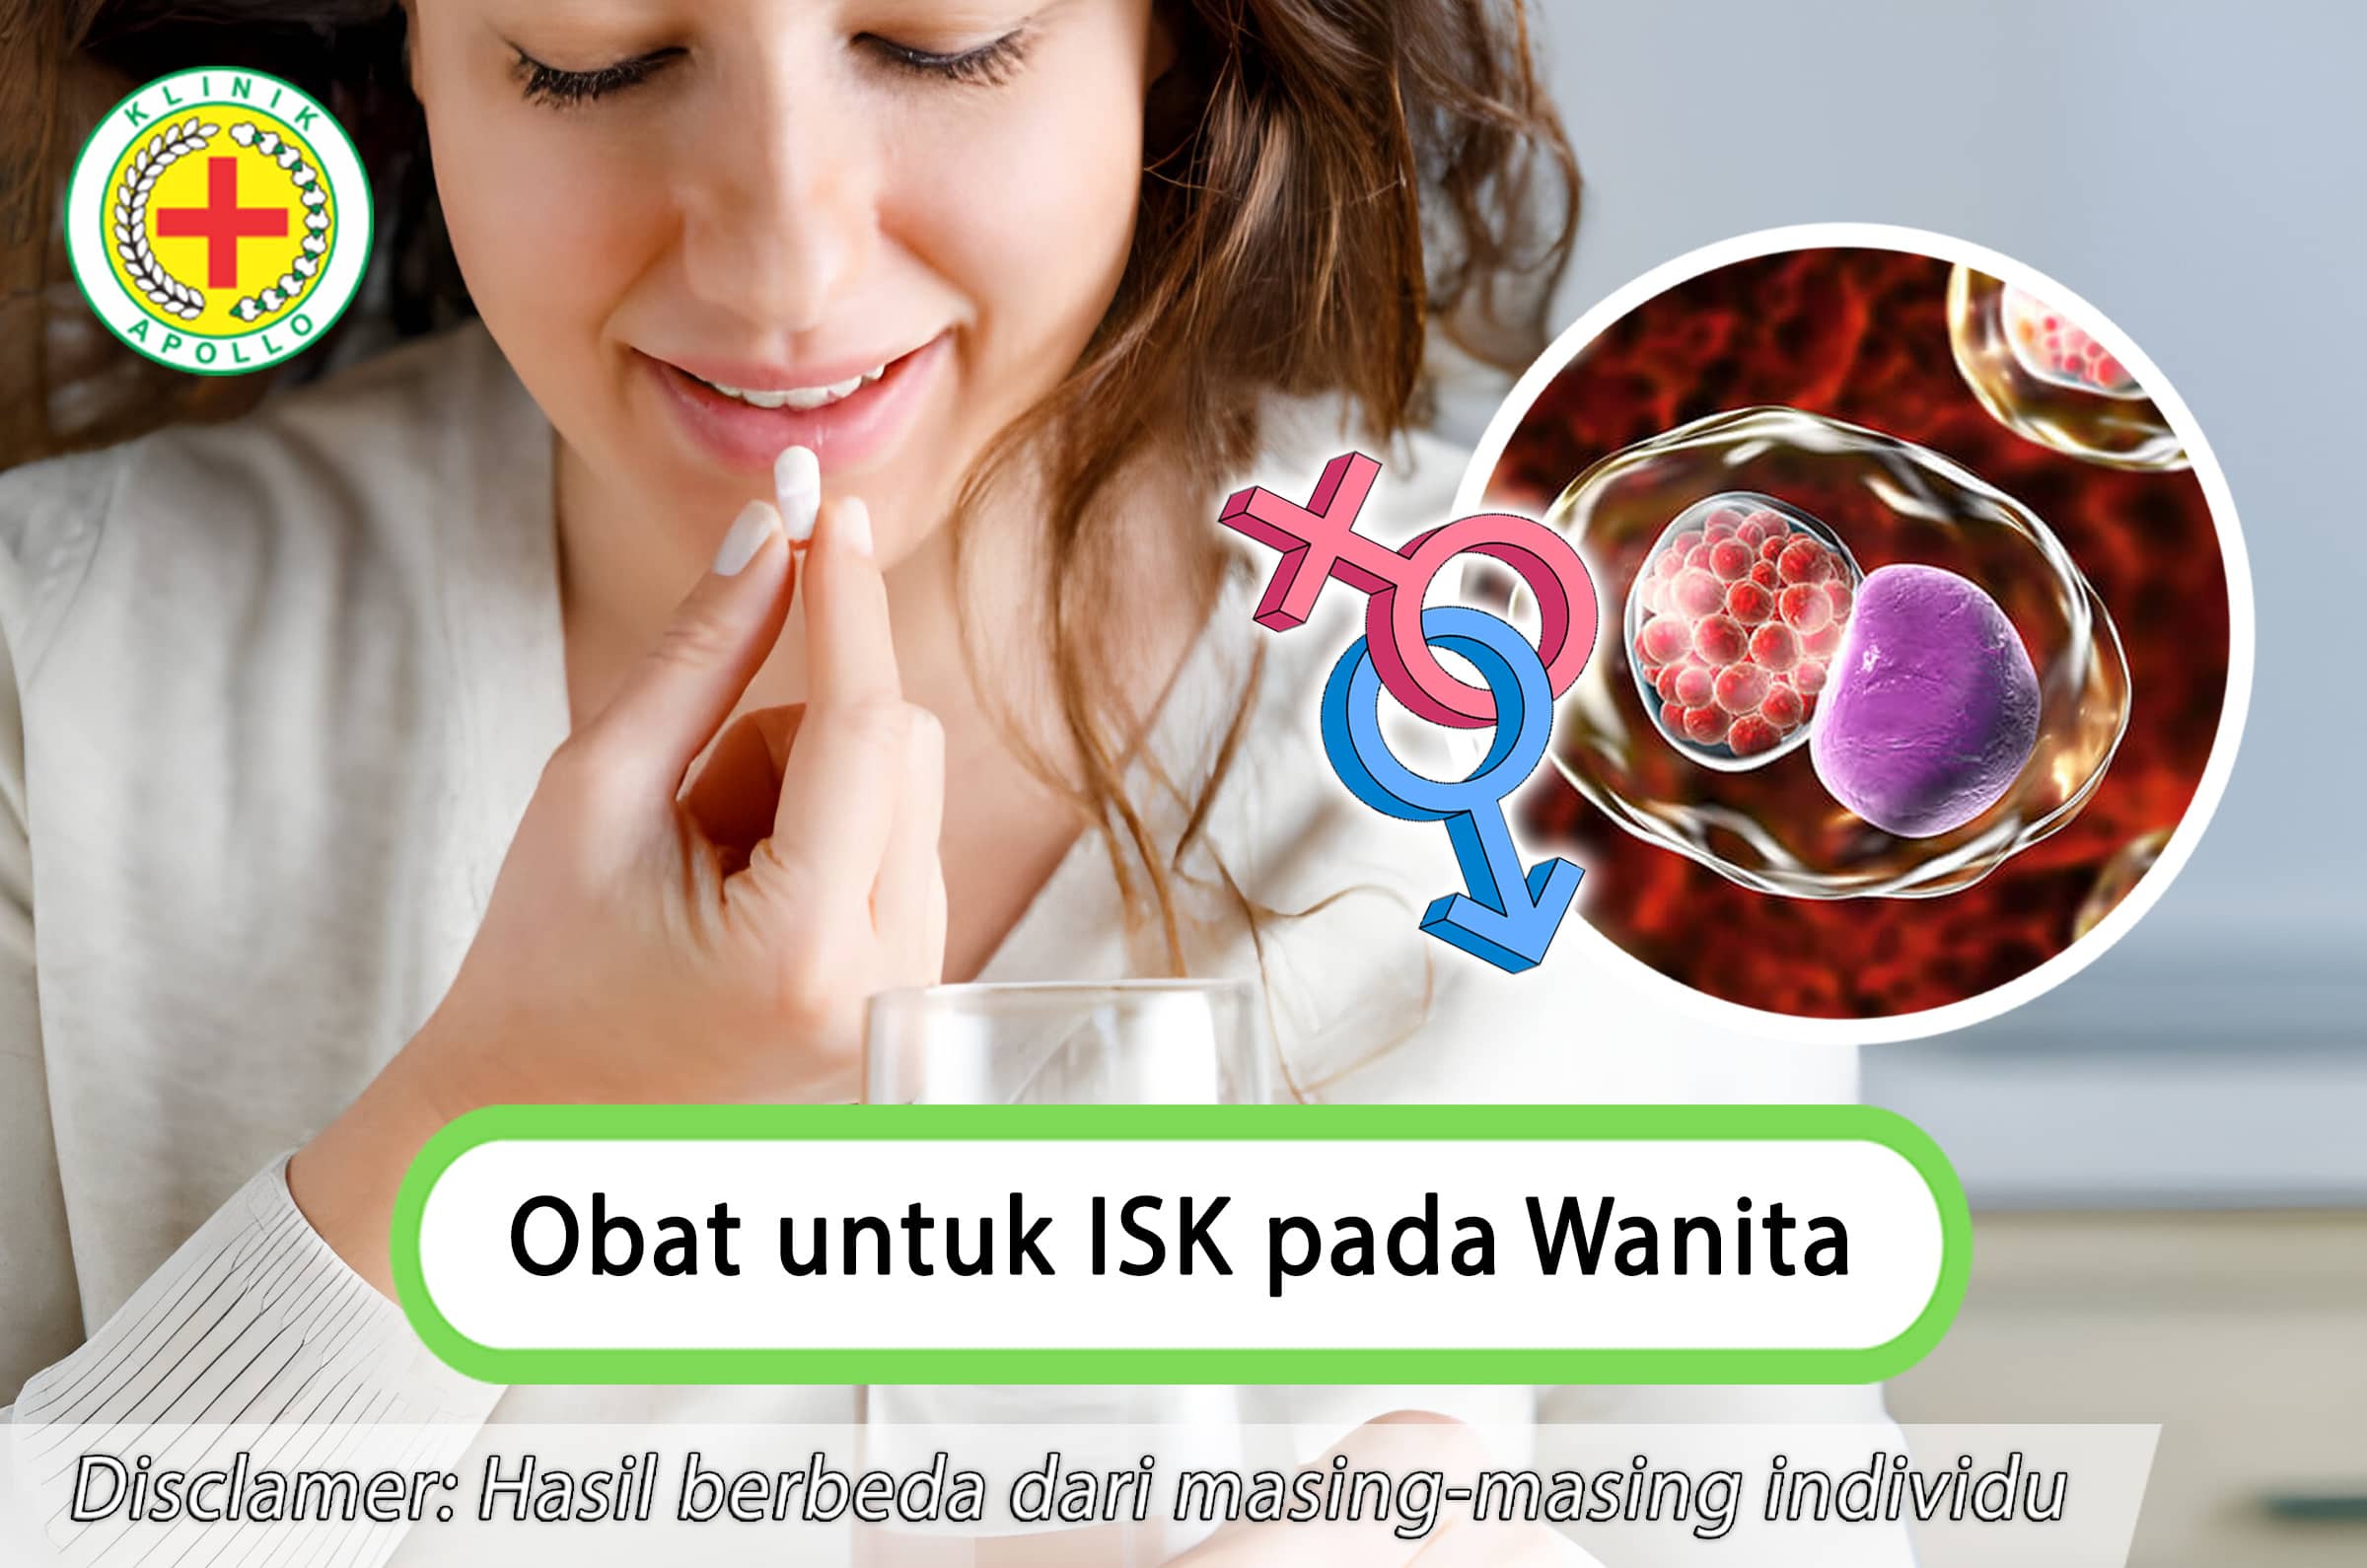 Rekomendasi obat untuk ISK pada wanita terbaik di Klinik Apollo Jakarta.